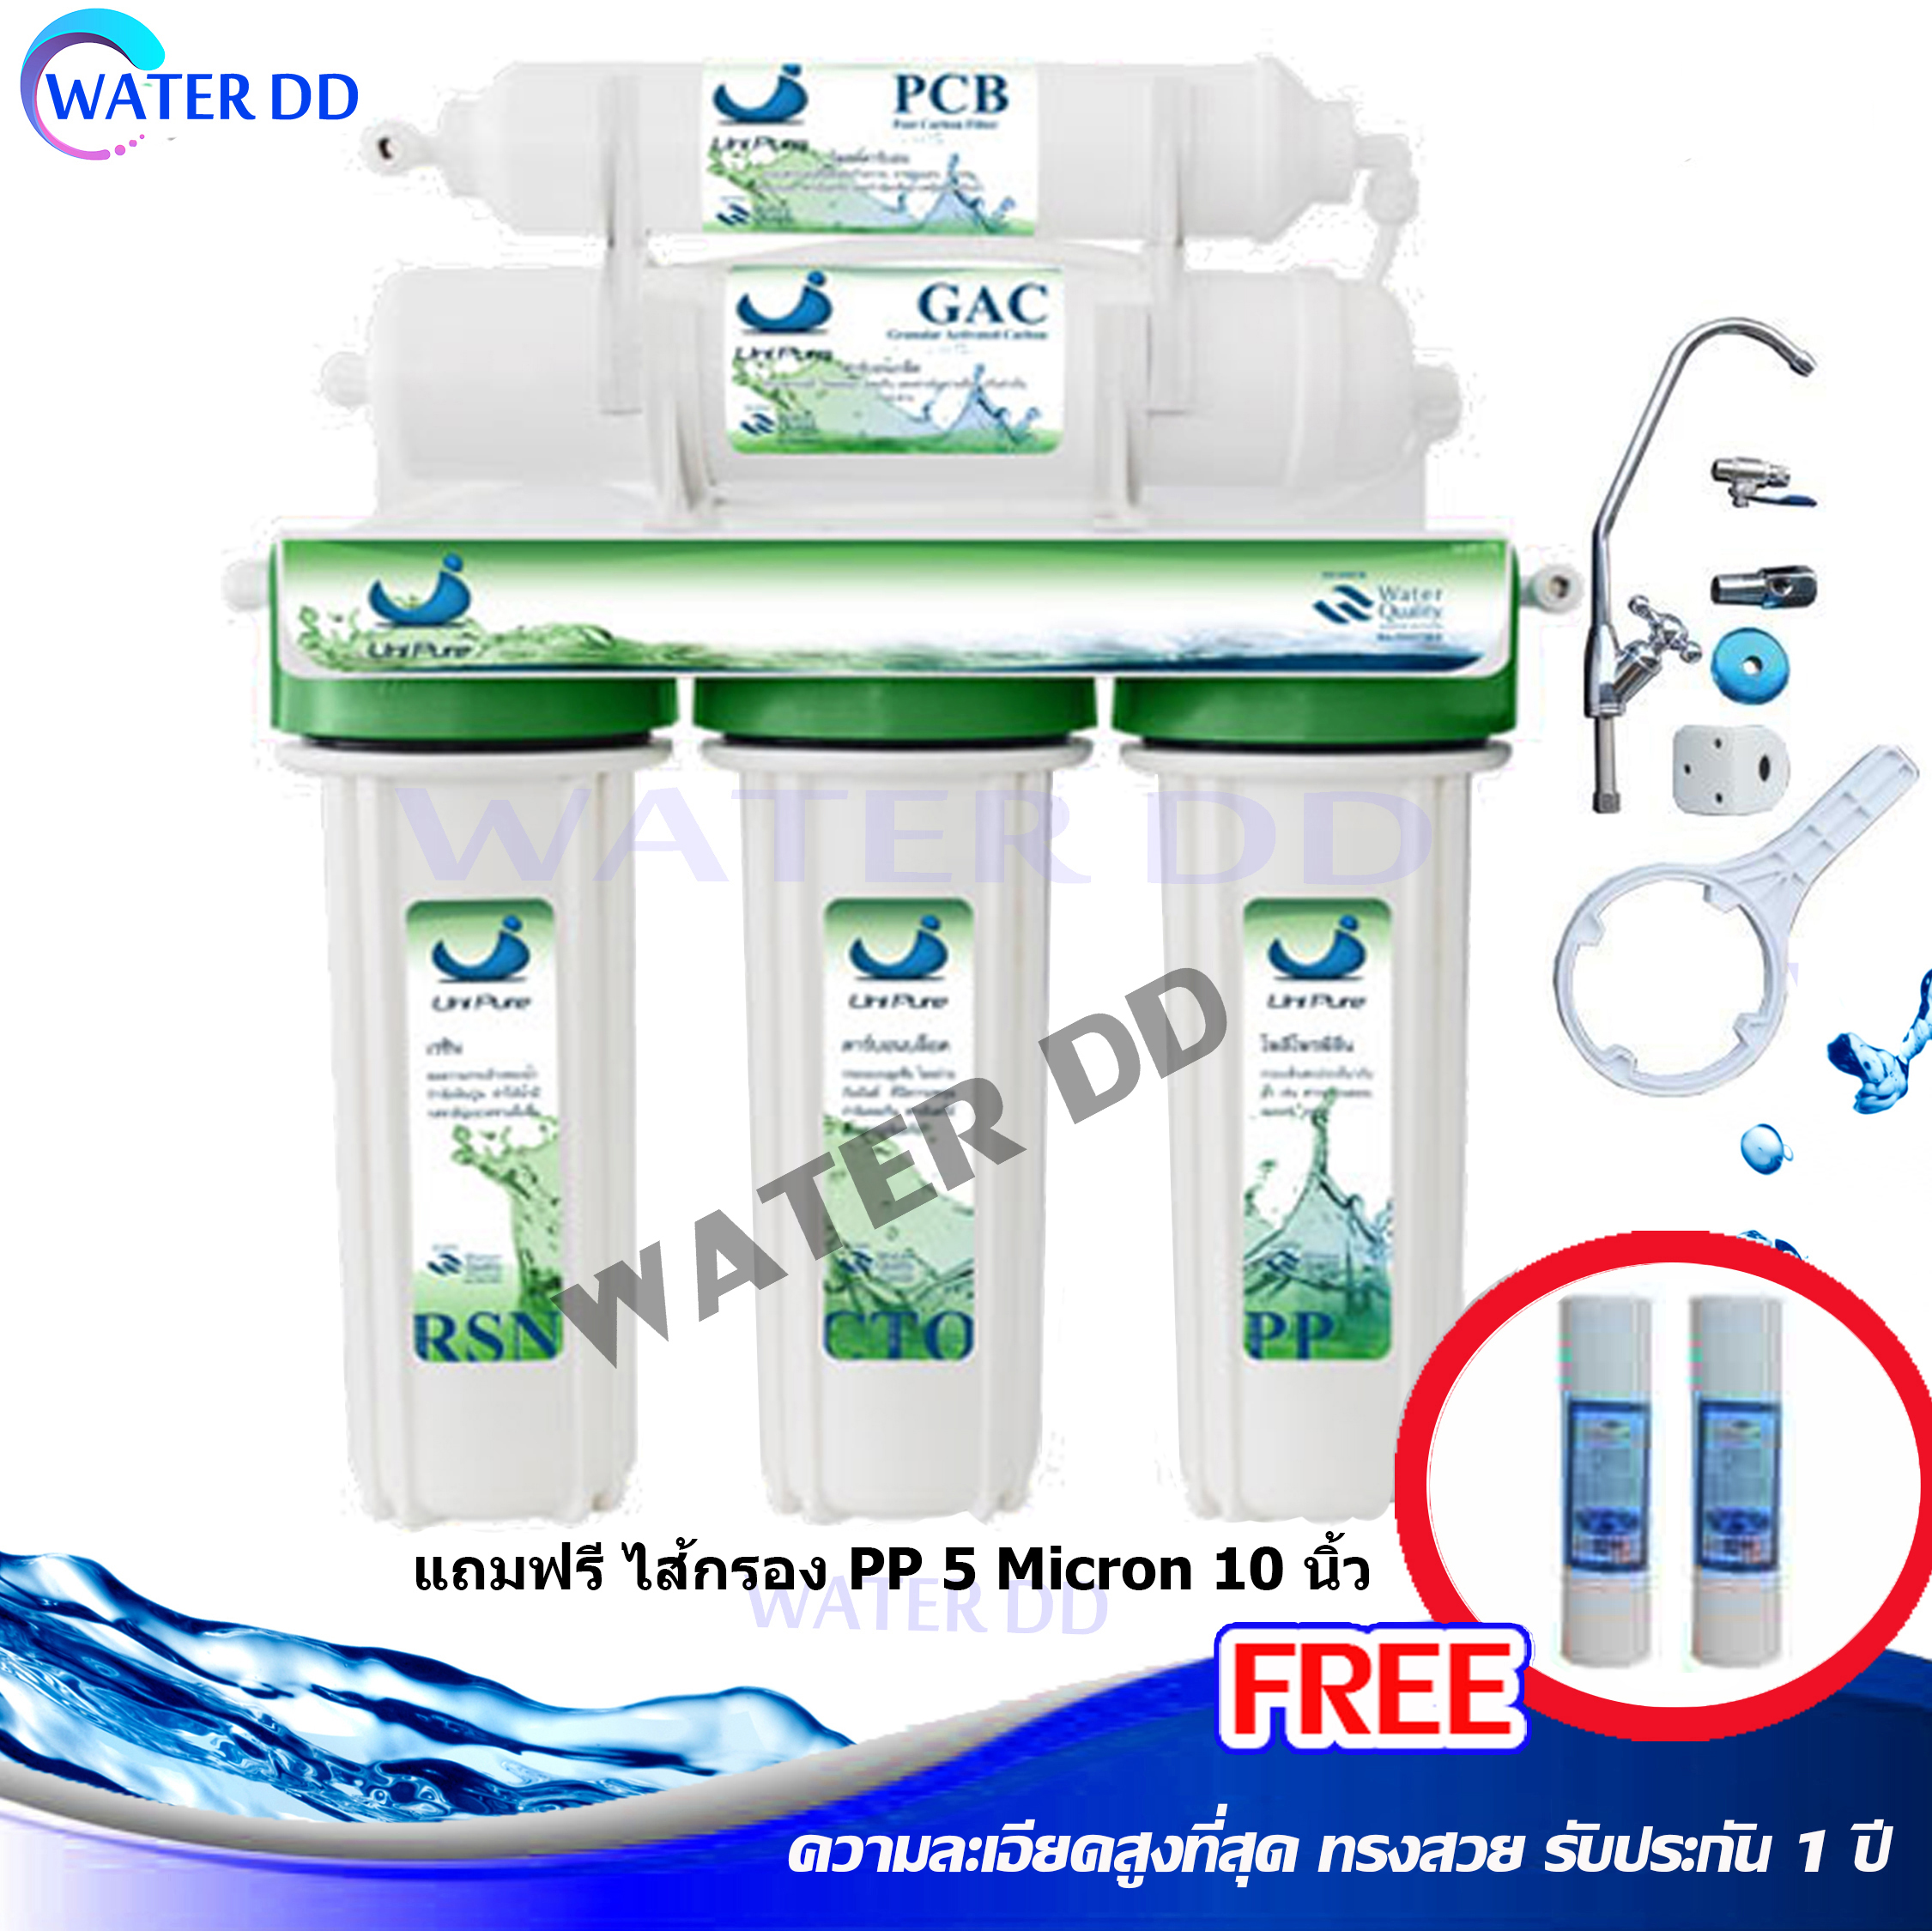 ถูกที่สุด Uni-Pure Green เครื่องกรองน้ำดื่ม 5 ขั้นตอน คุณภาพดี ติดตั้งง่าย ไส้กรองน้ำ สามารถกรองกลิ่น สี สารเคมี คลอรีน